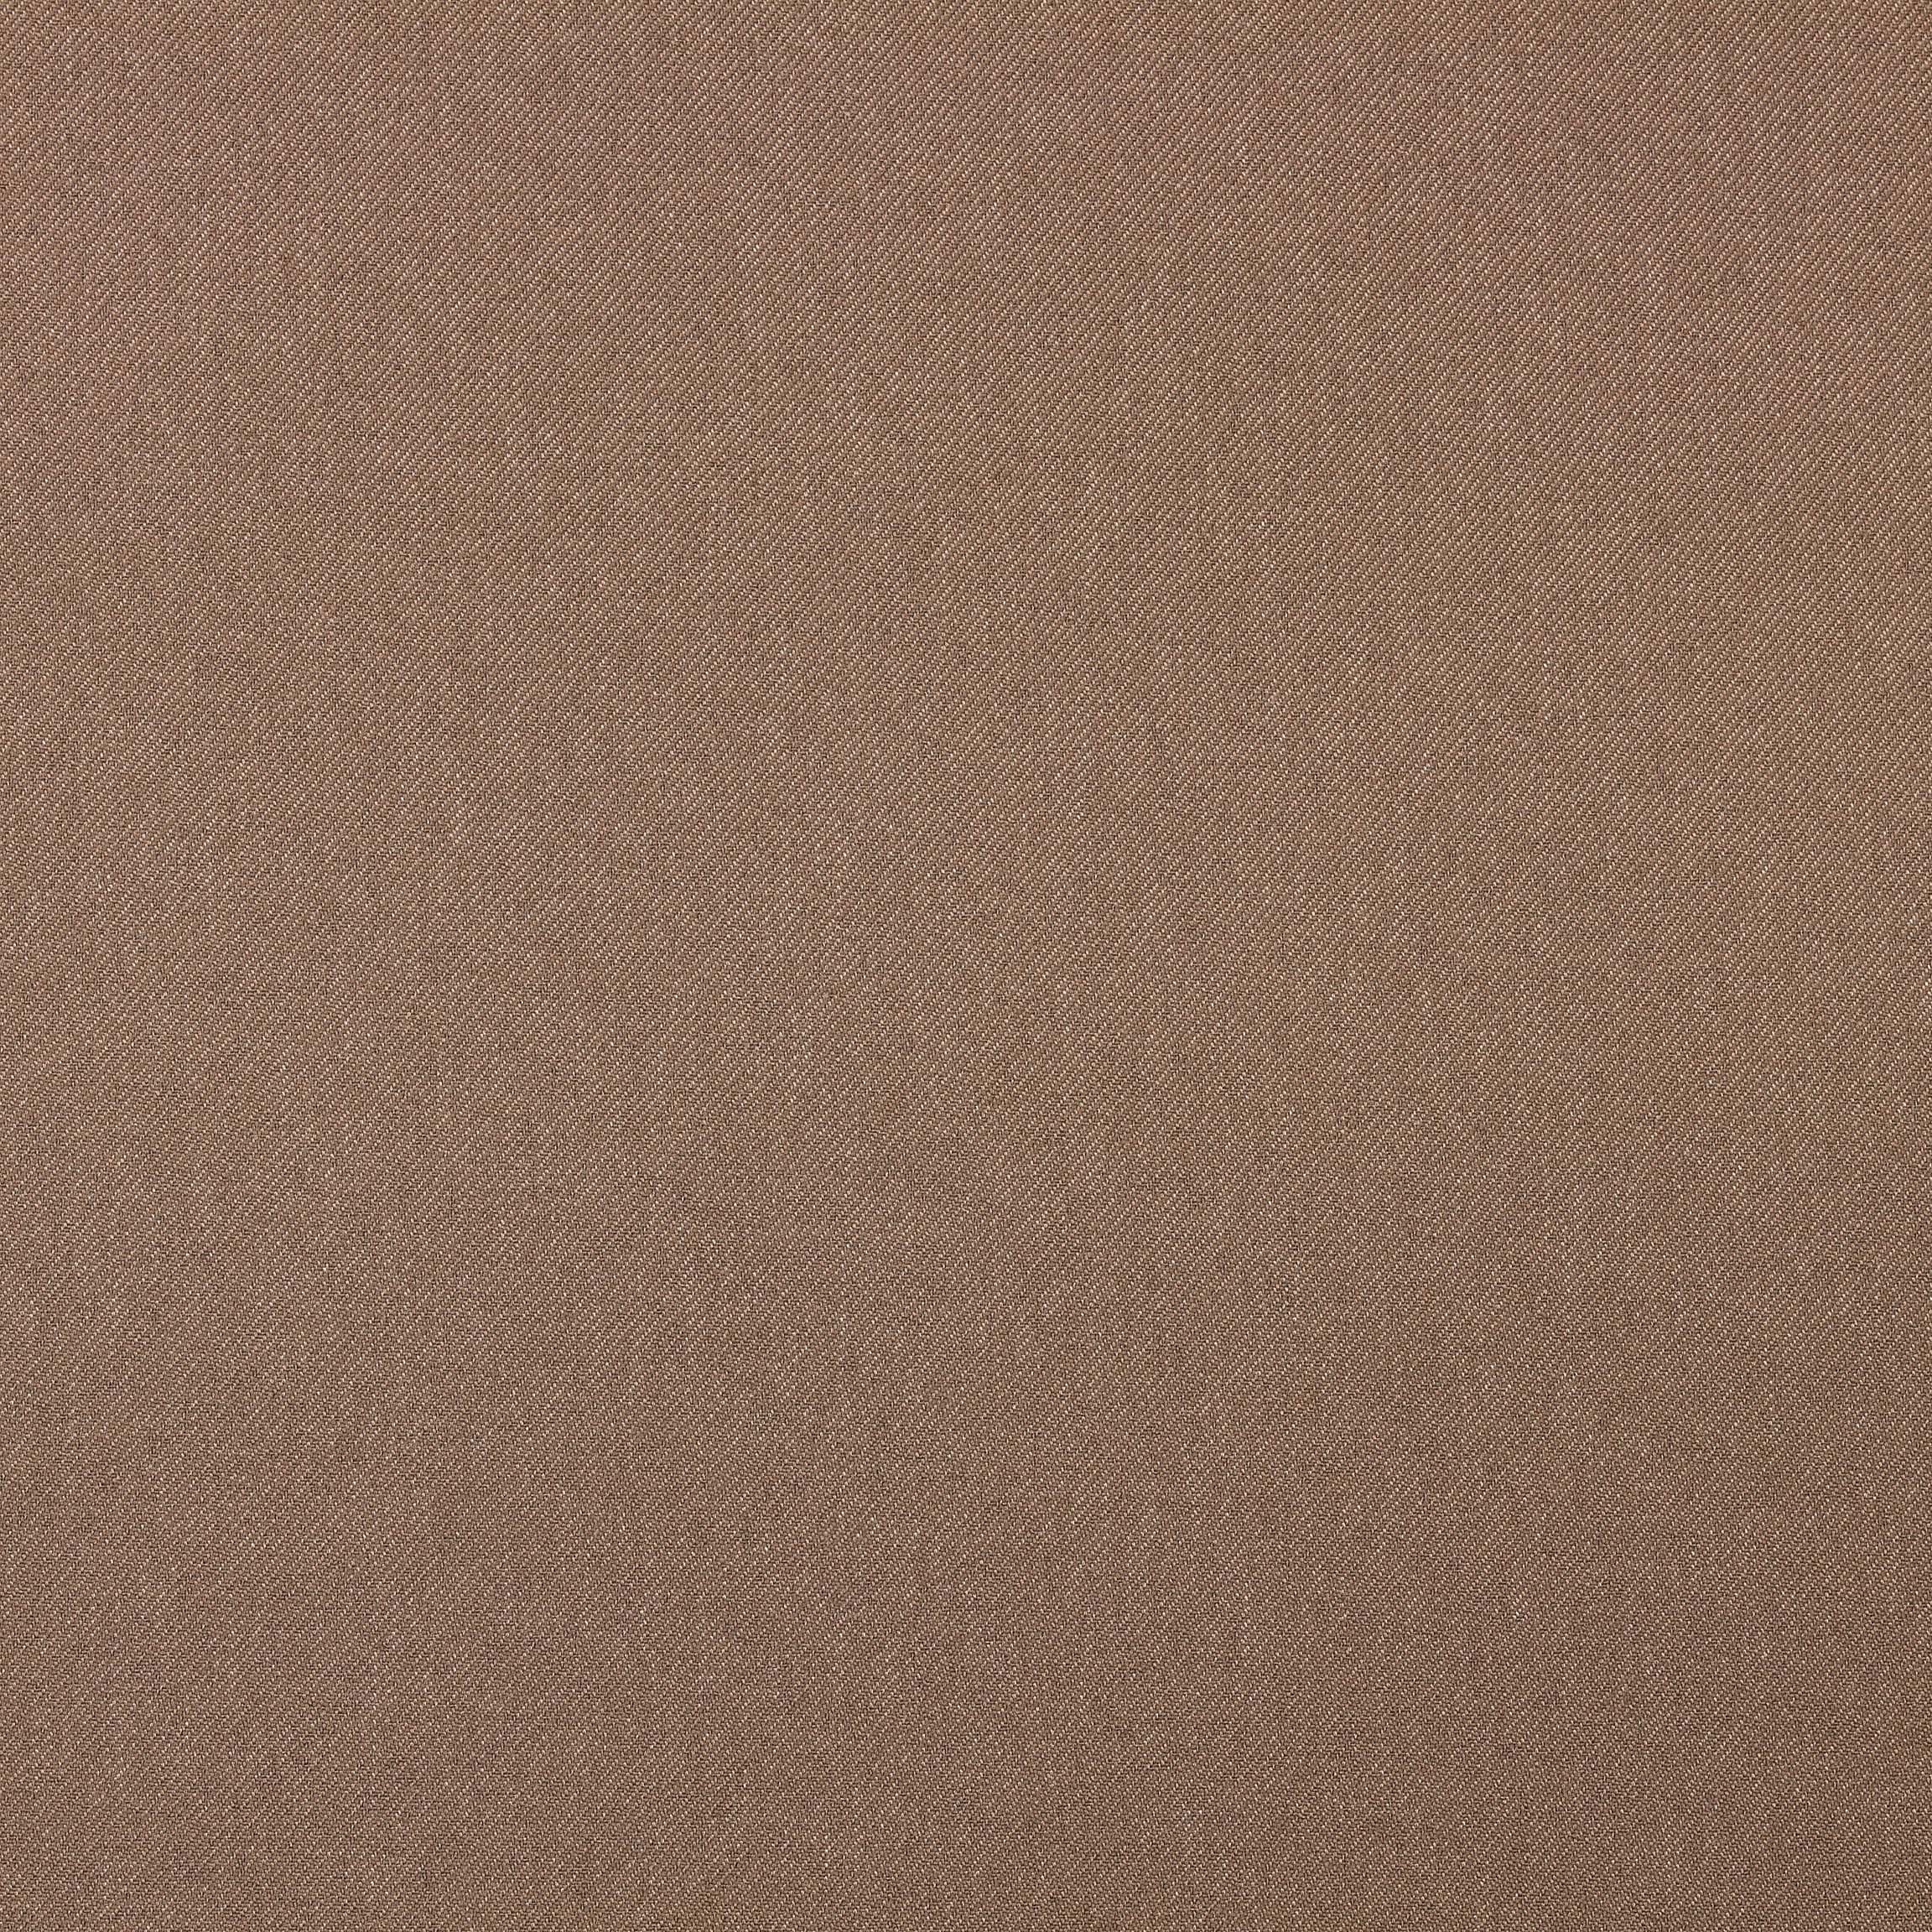  Портьерная ткань SETO CAPPUCCINO, ширина 280 см  - Фото